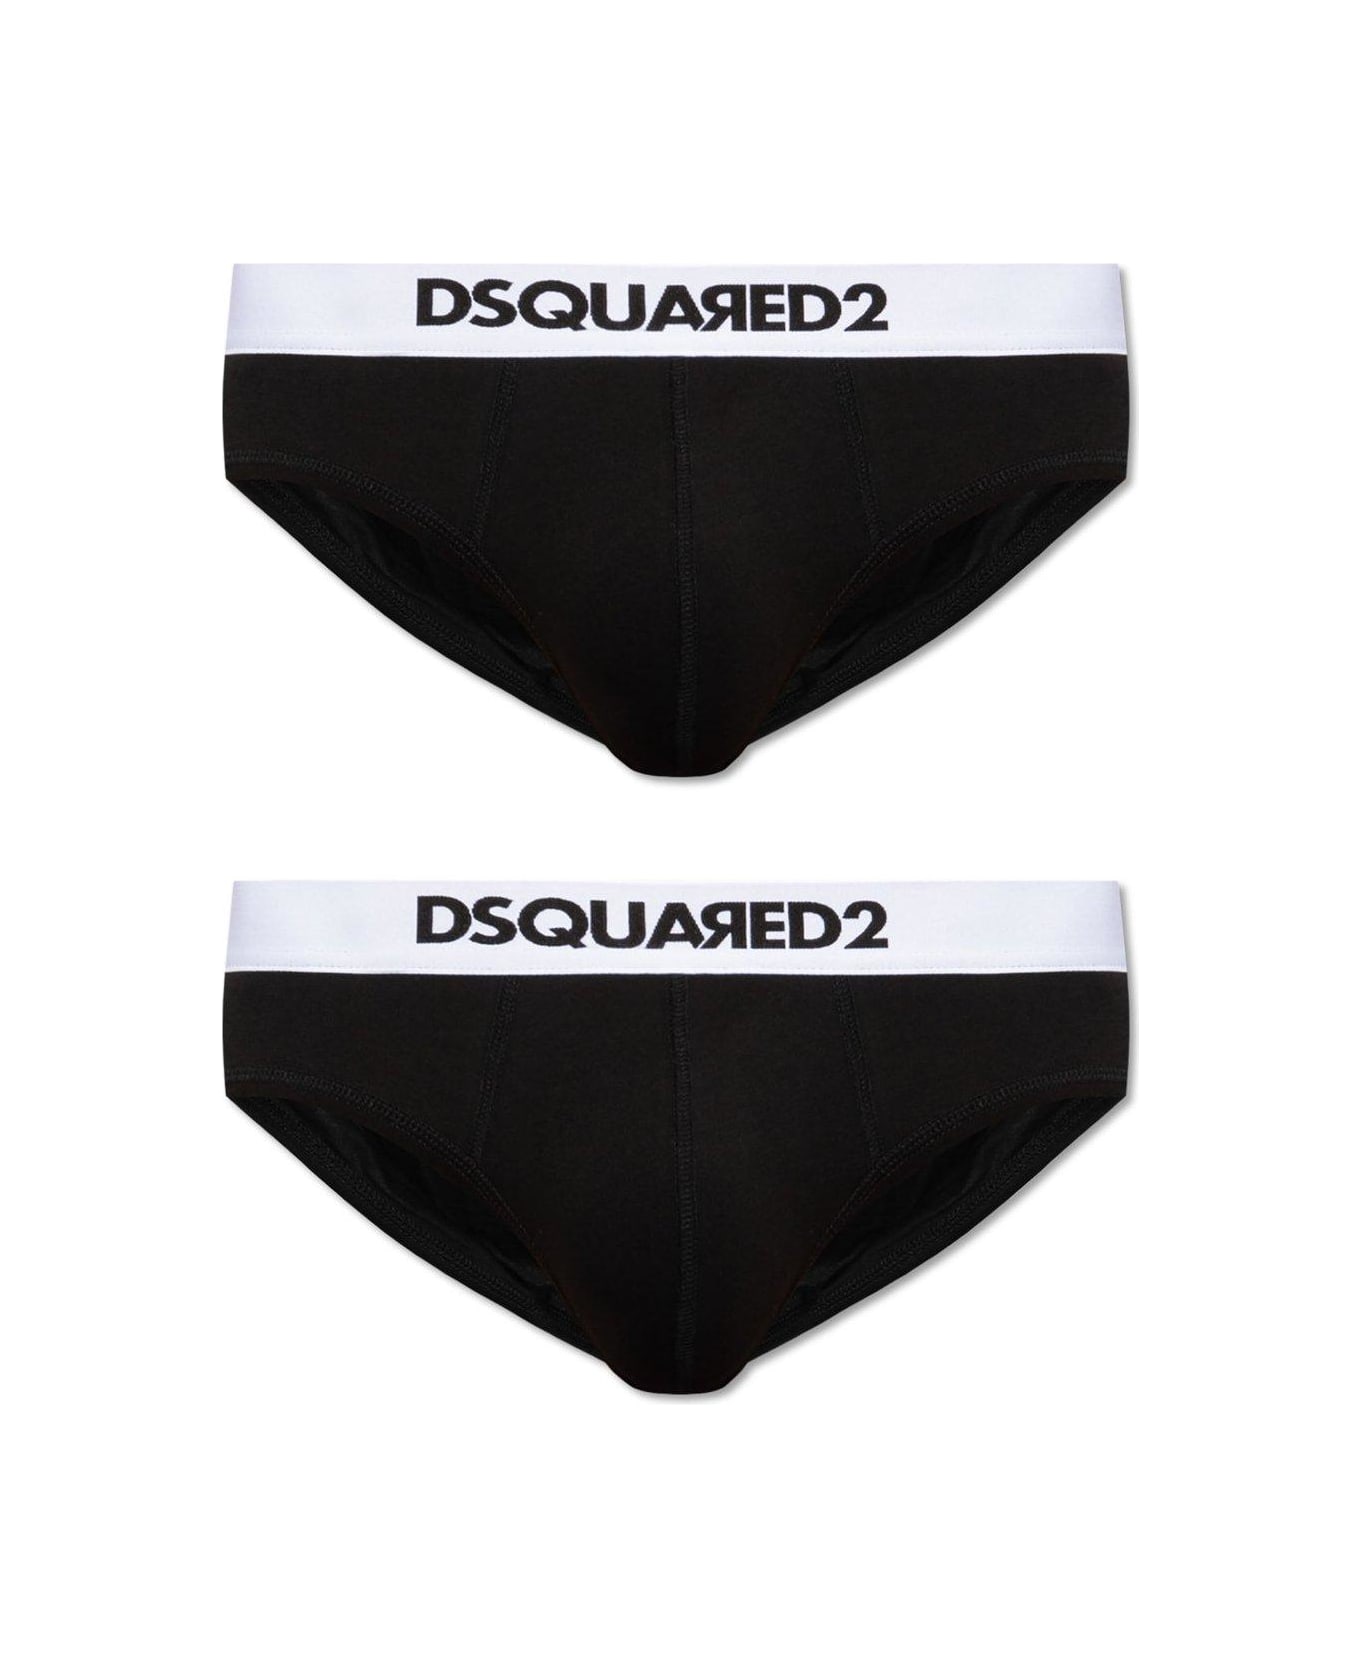 Dsquared2 2 Pack Logo Waistband Briefs - Black/white ショーツ